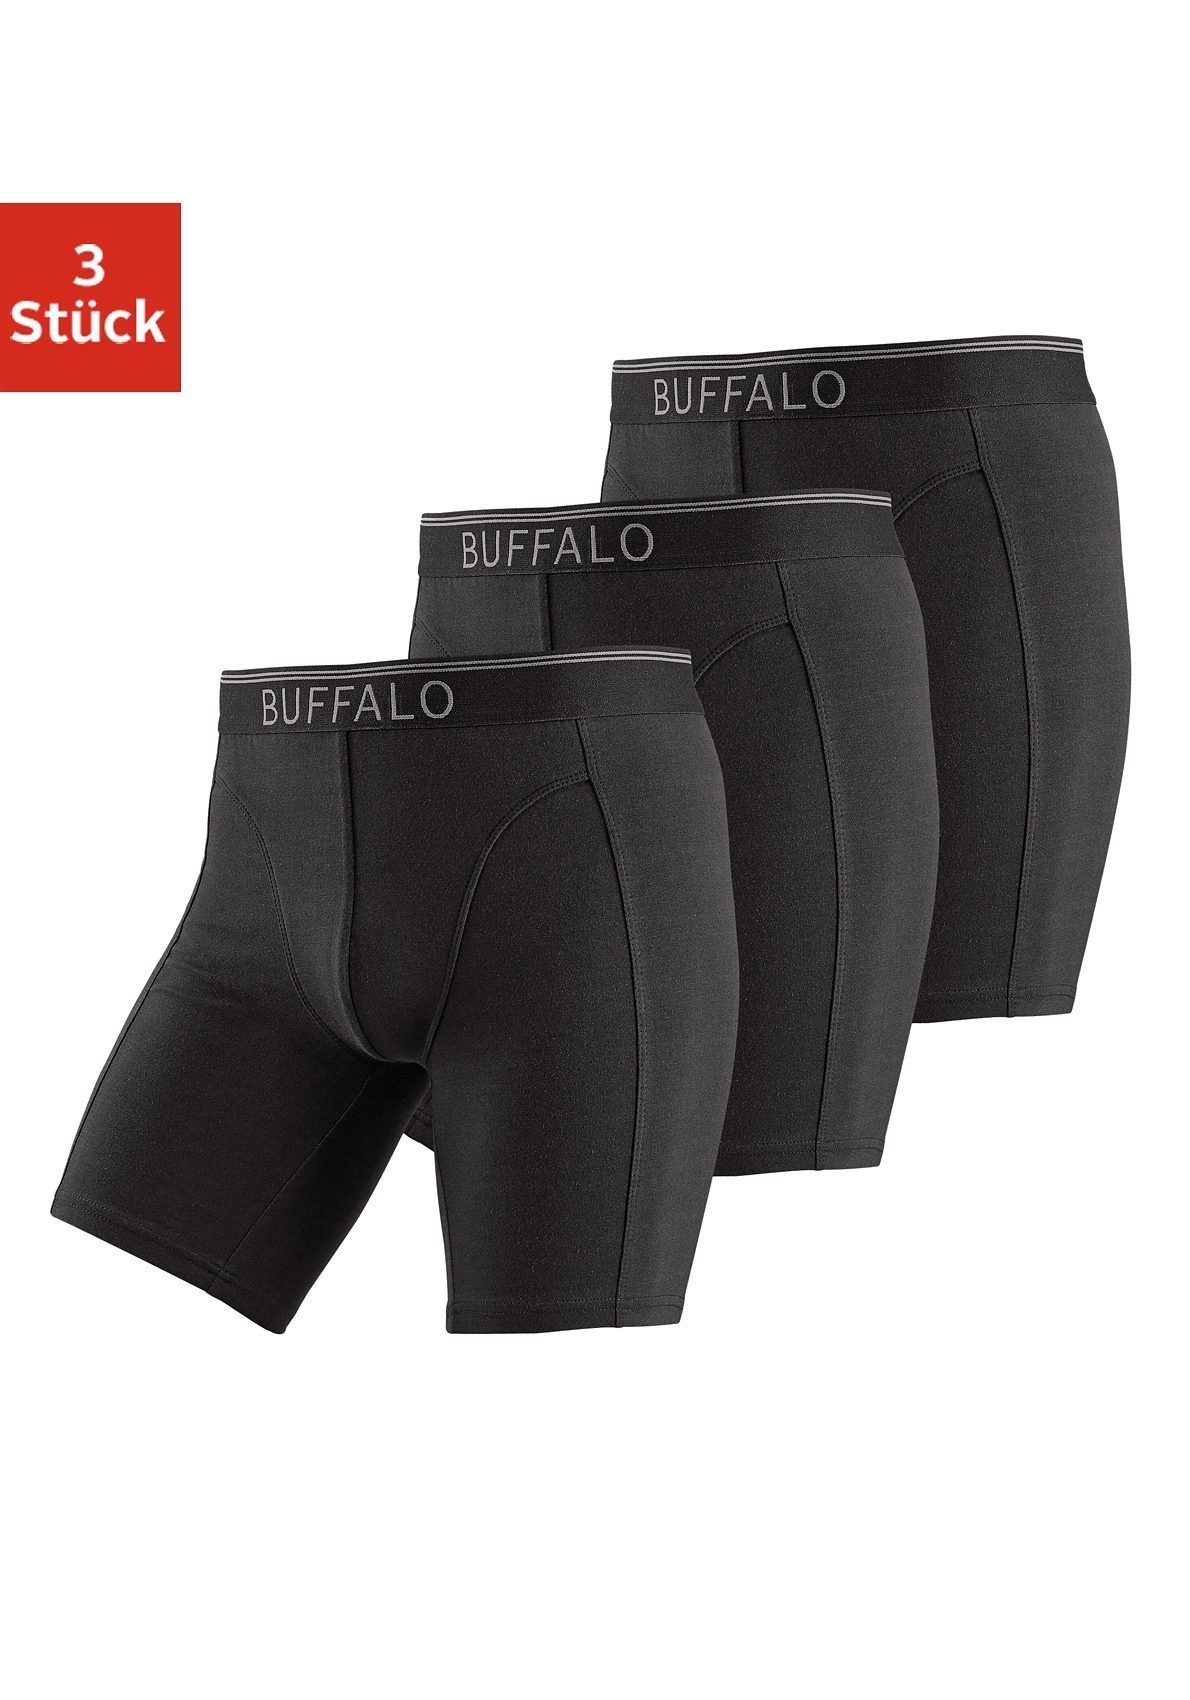 Buffalo Boxer (Packung, 3-St) in langer Form ideal auch für Sport und Trekking schwarz